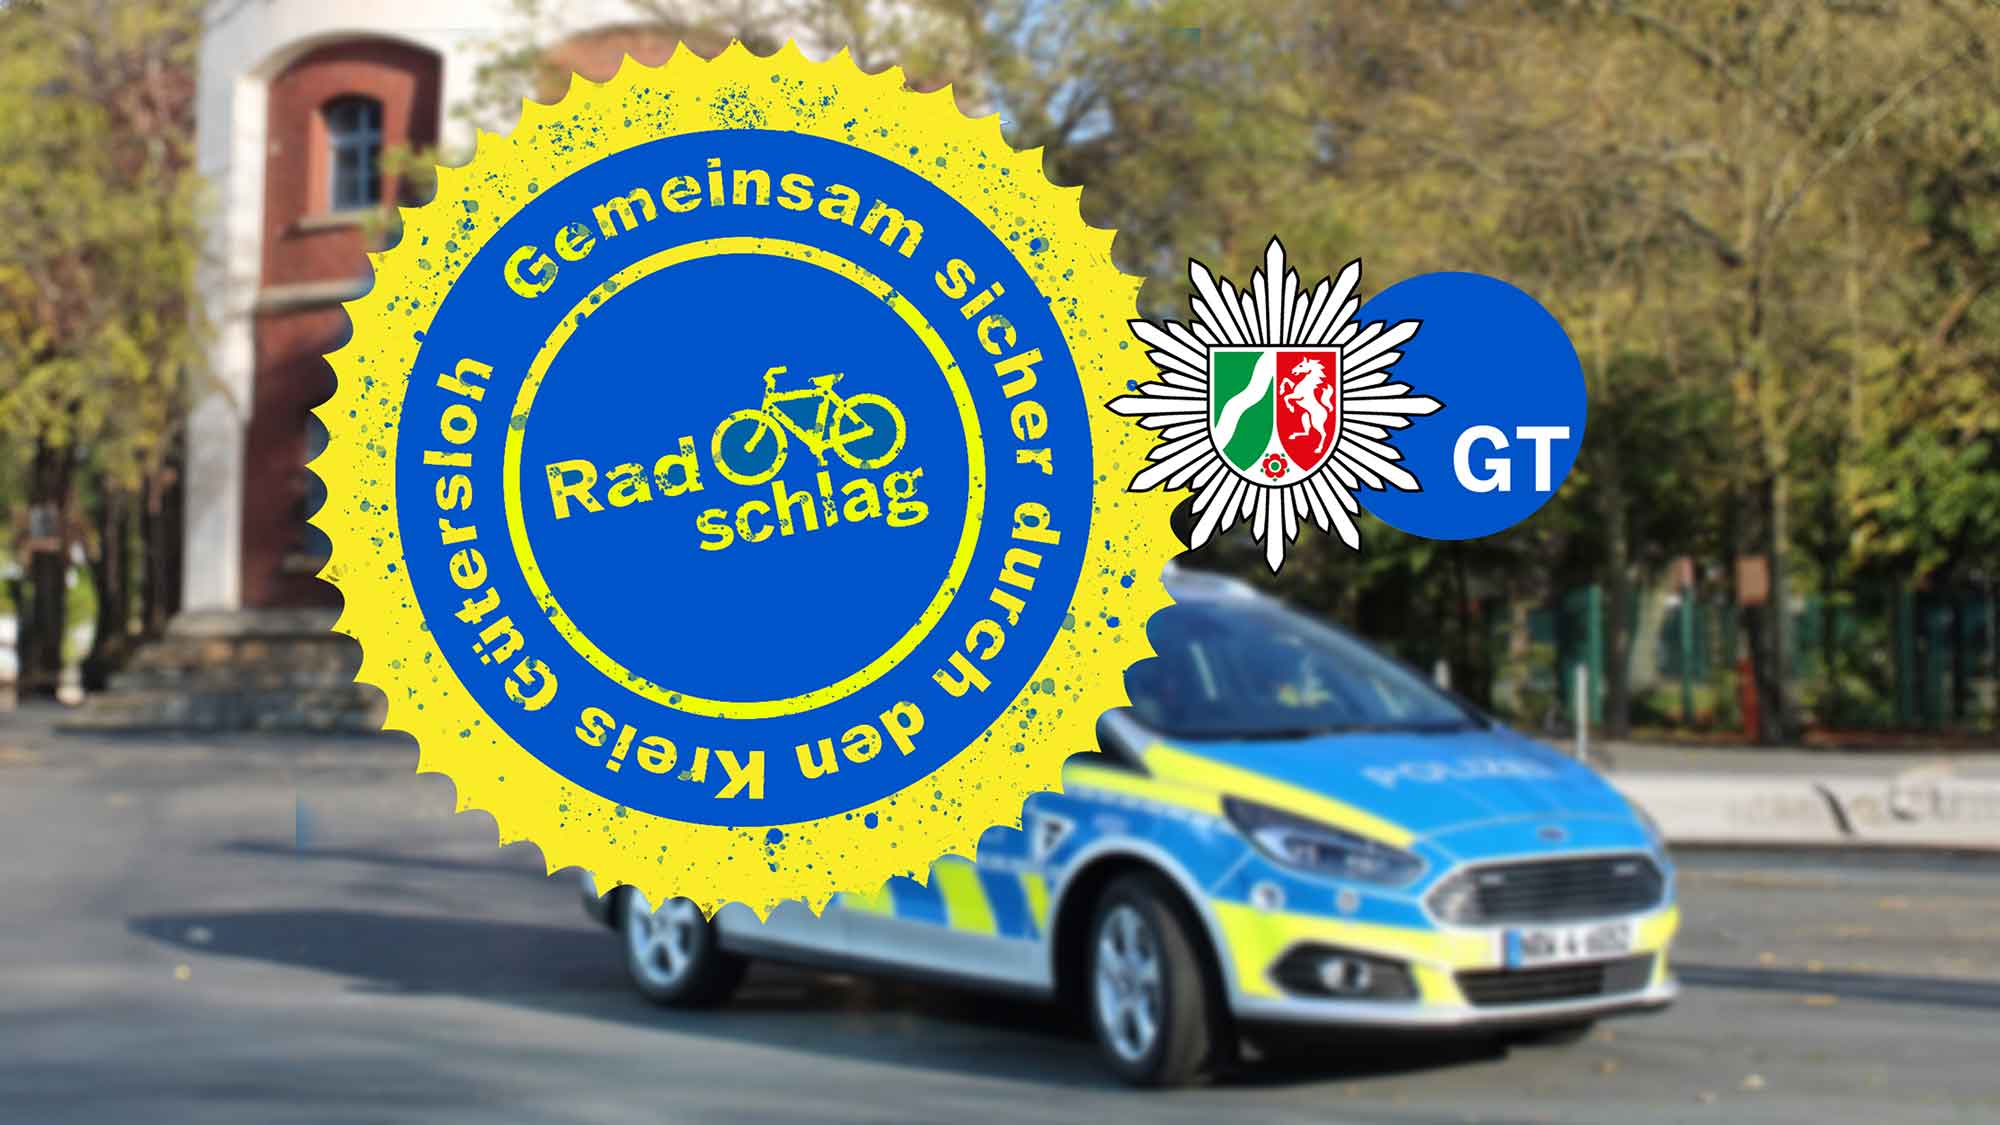 Polizei Gütersloh: Jetzt anmelden zum Pedelec Training mit der Polizei – Aktion Radschlag